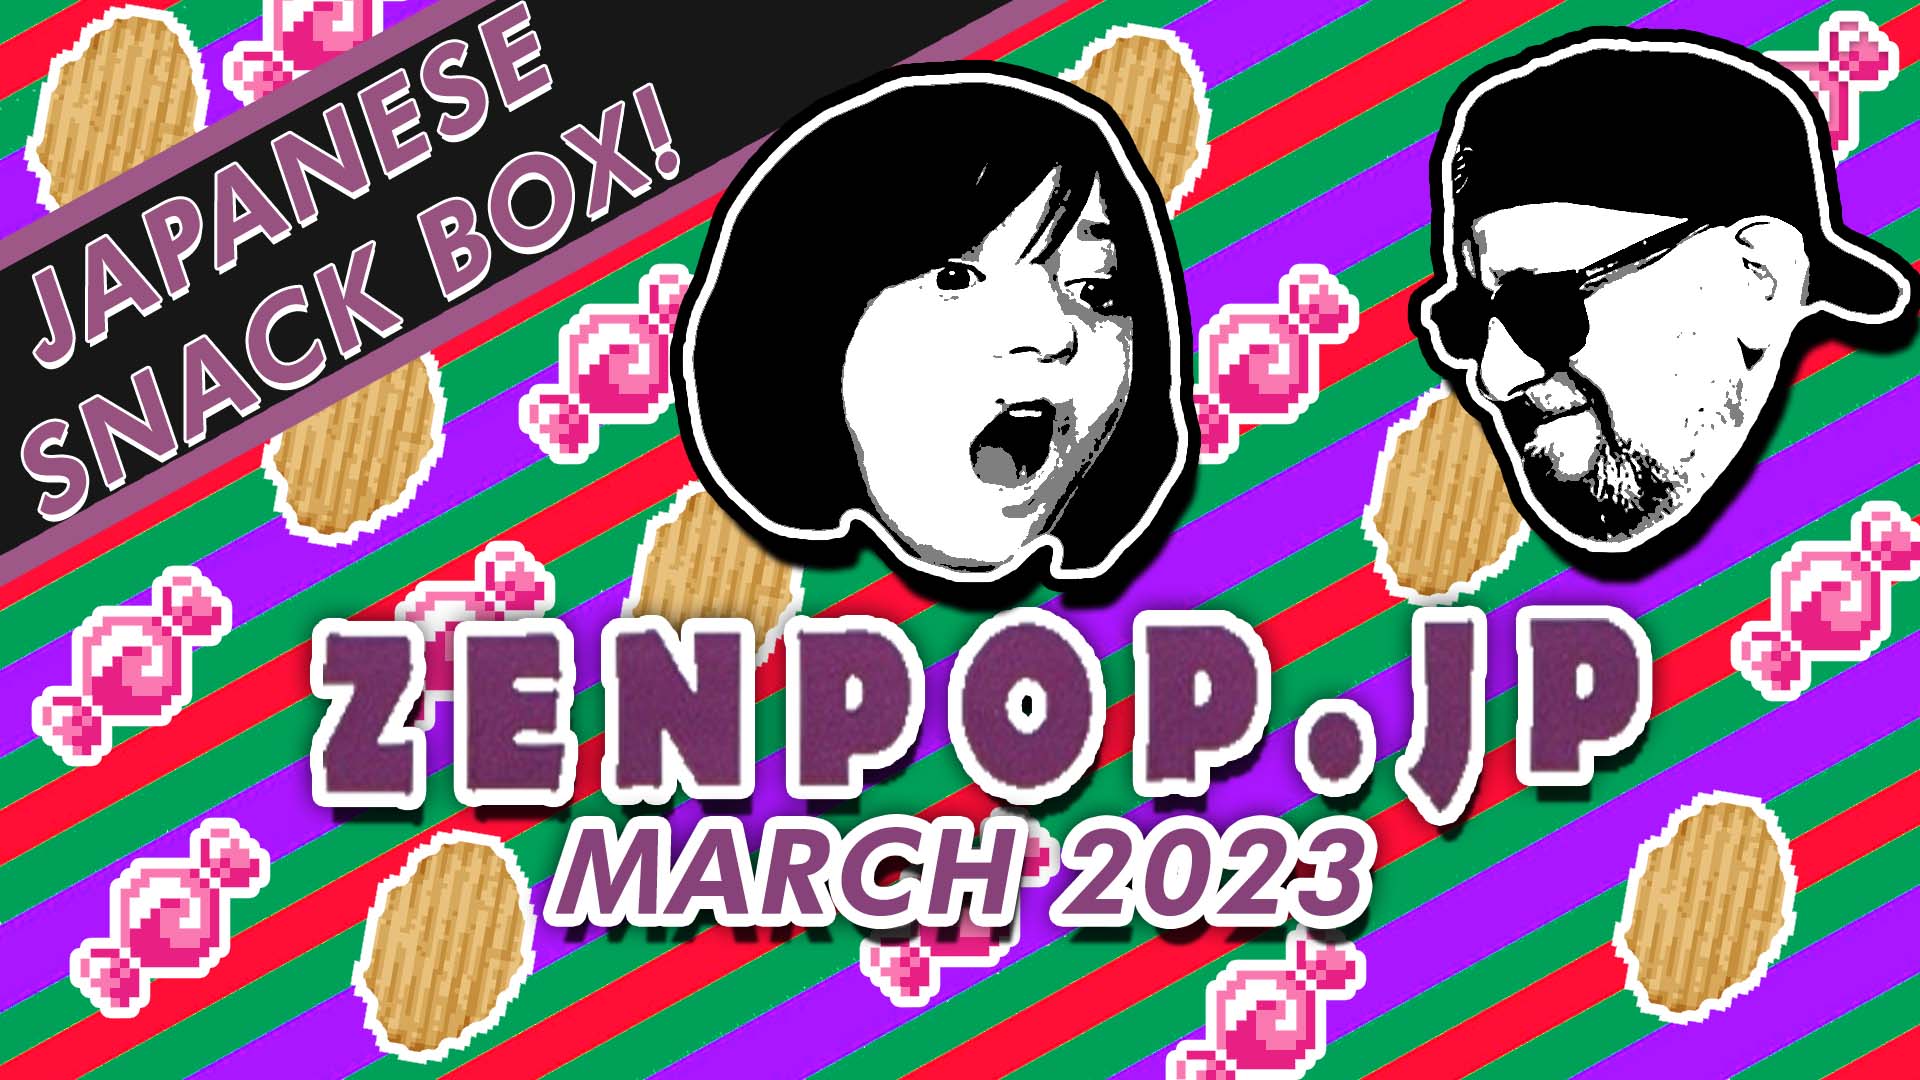 Zenpop.jp Japanese Snack Box Taste Test March 2023